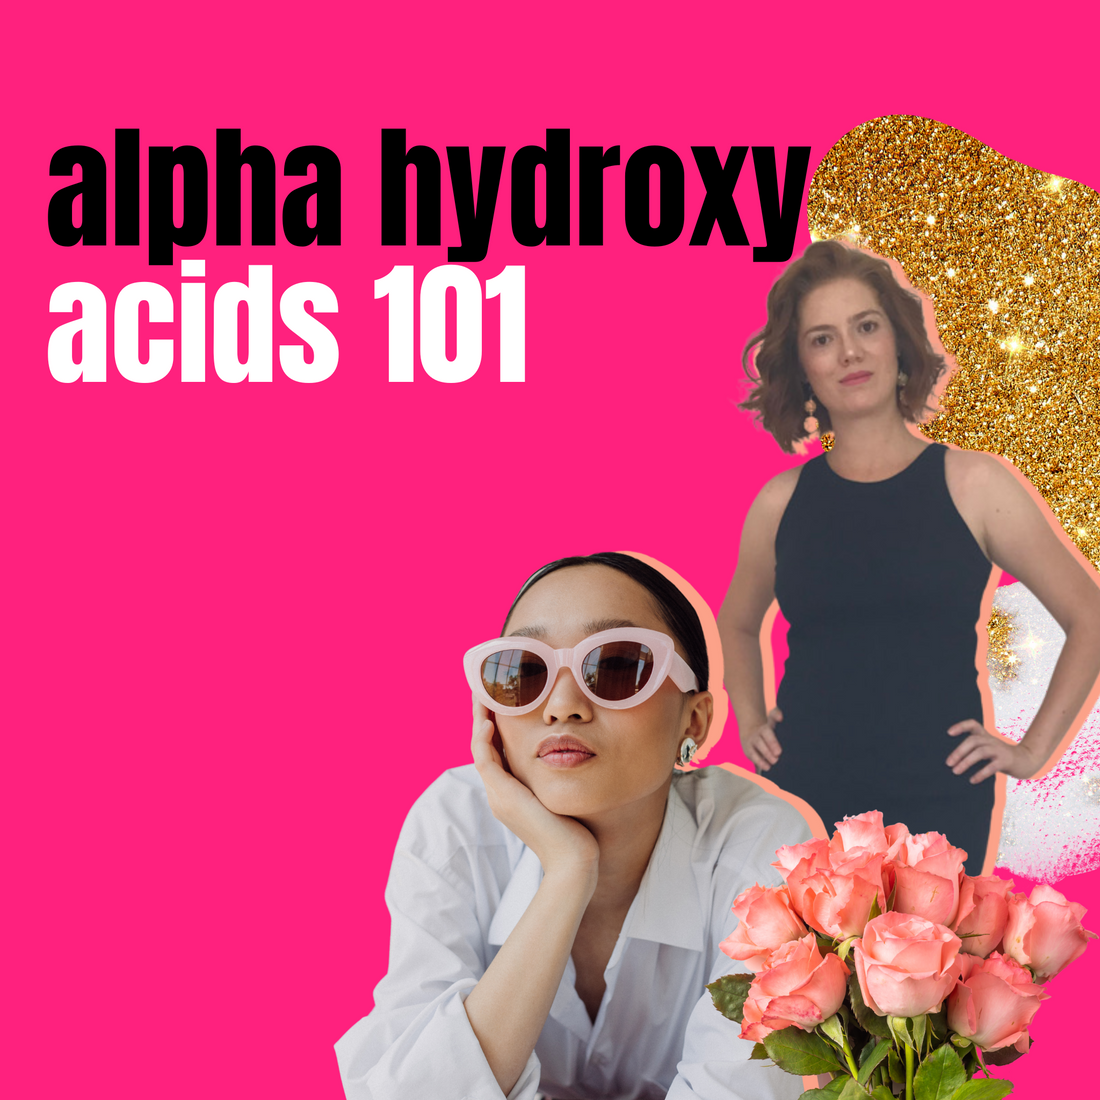 Alpha Hydroxy acids in skincare | acids 101